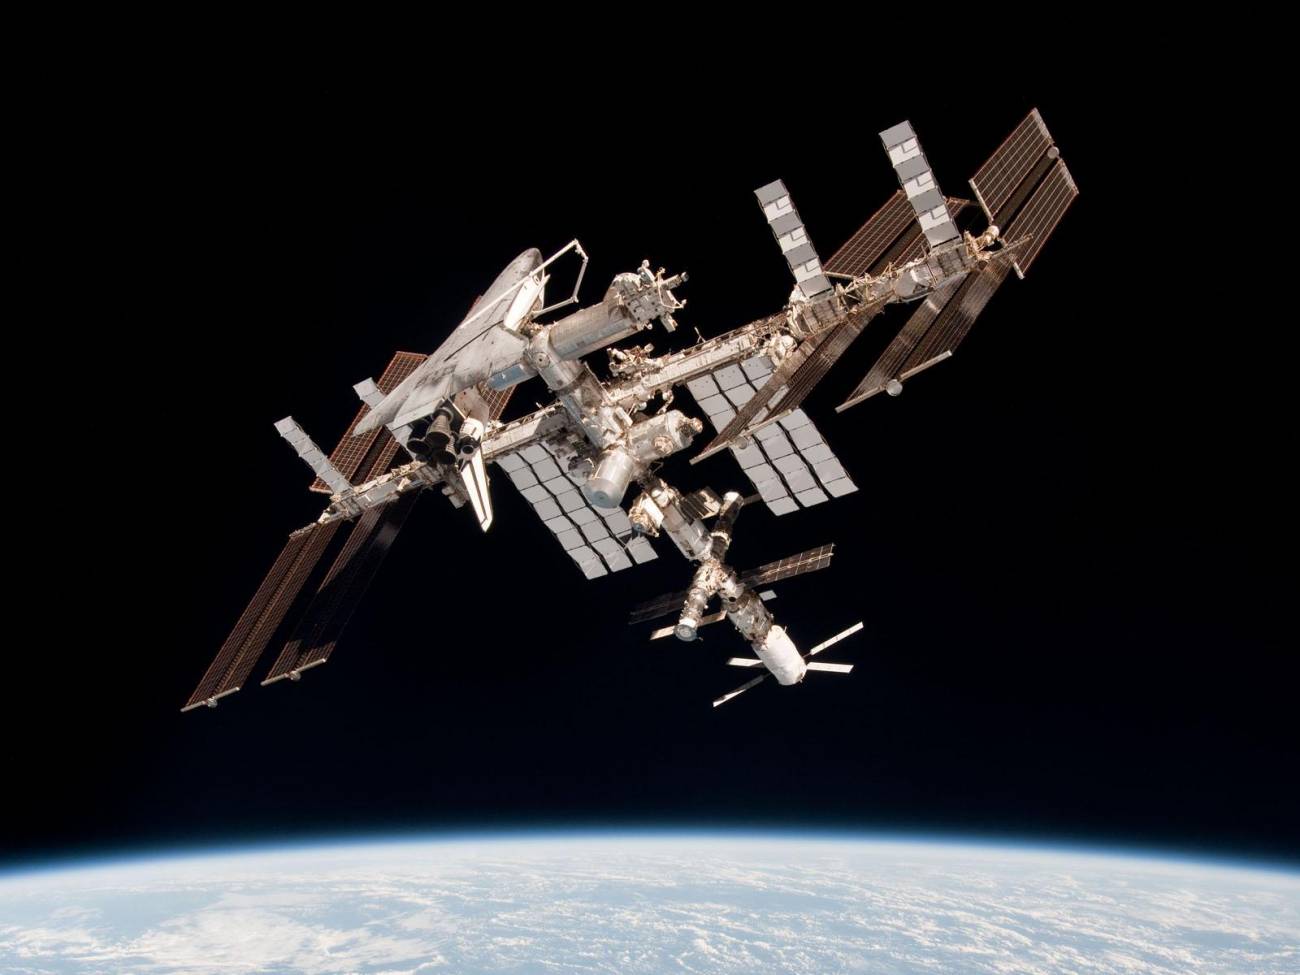 Imágenes espectaculares de la Estación Espacial Internacional